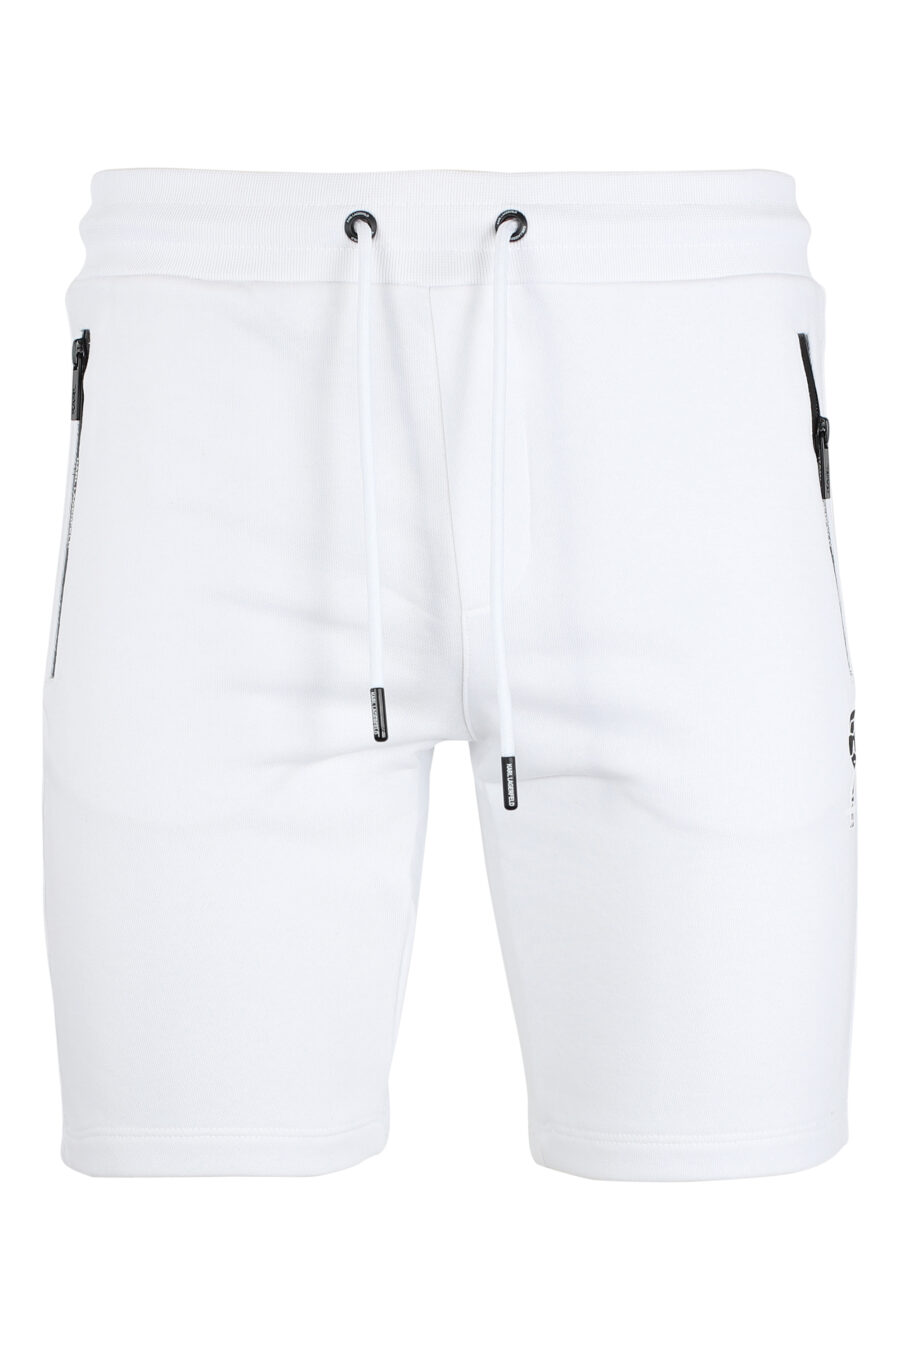 Pantalón de chándal blanco corto con minilogo "karl" en silueta negro - IMG 9514